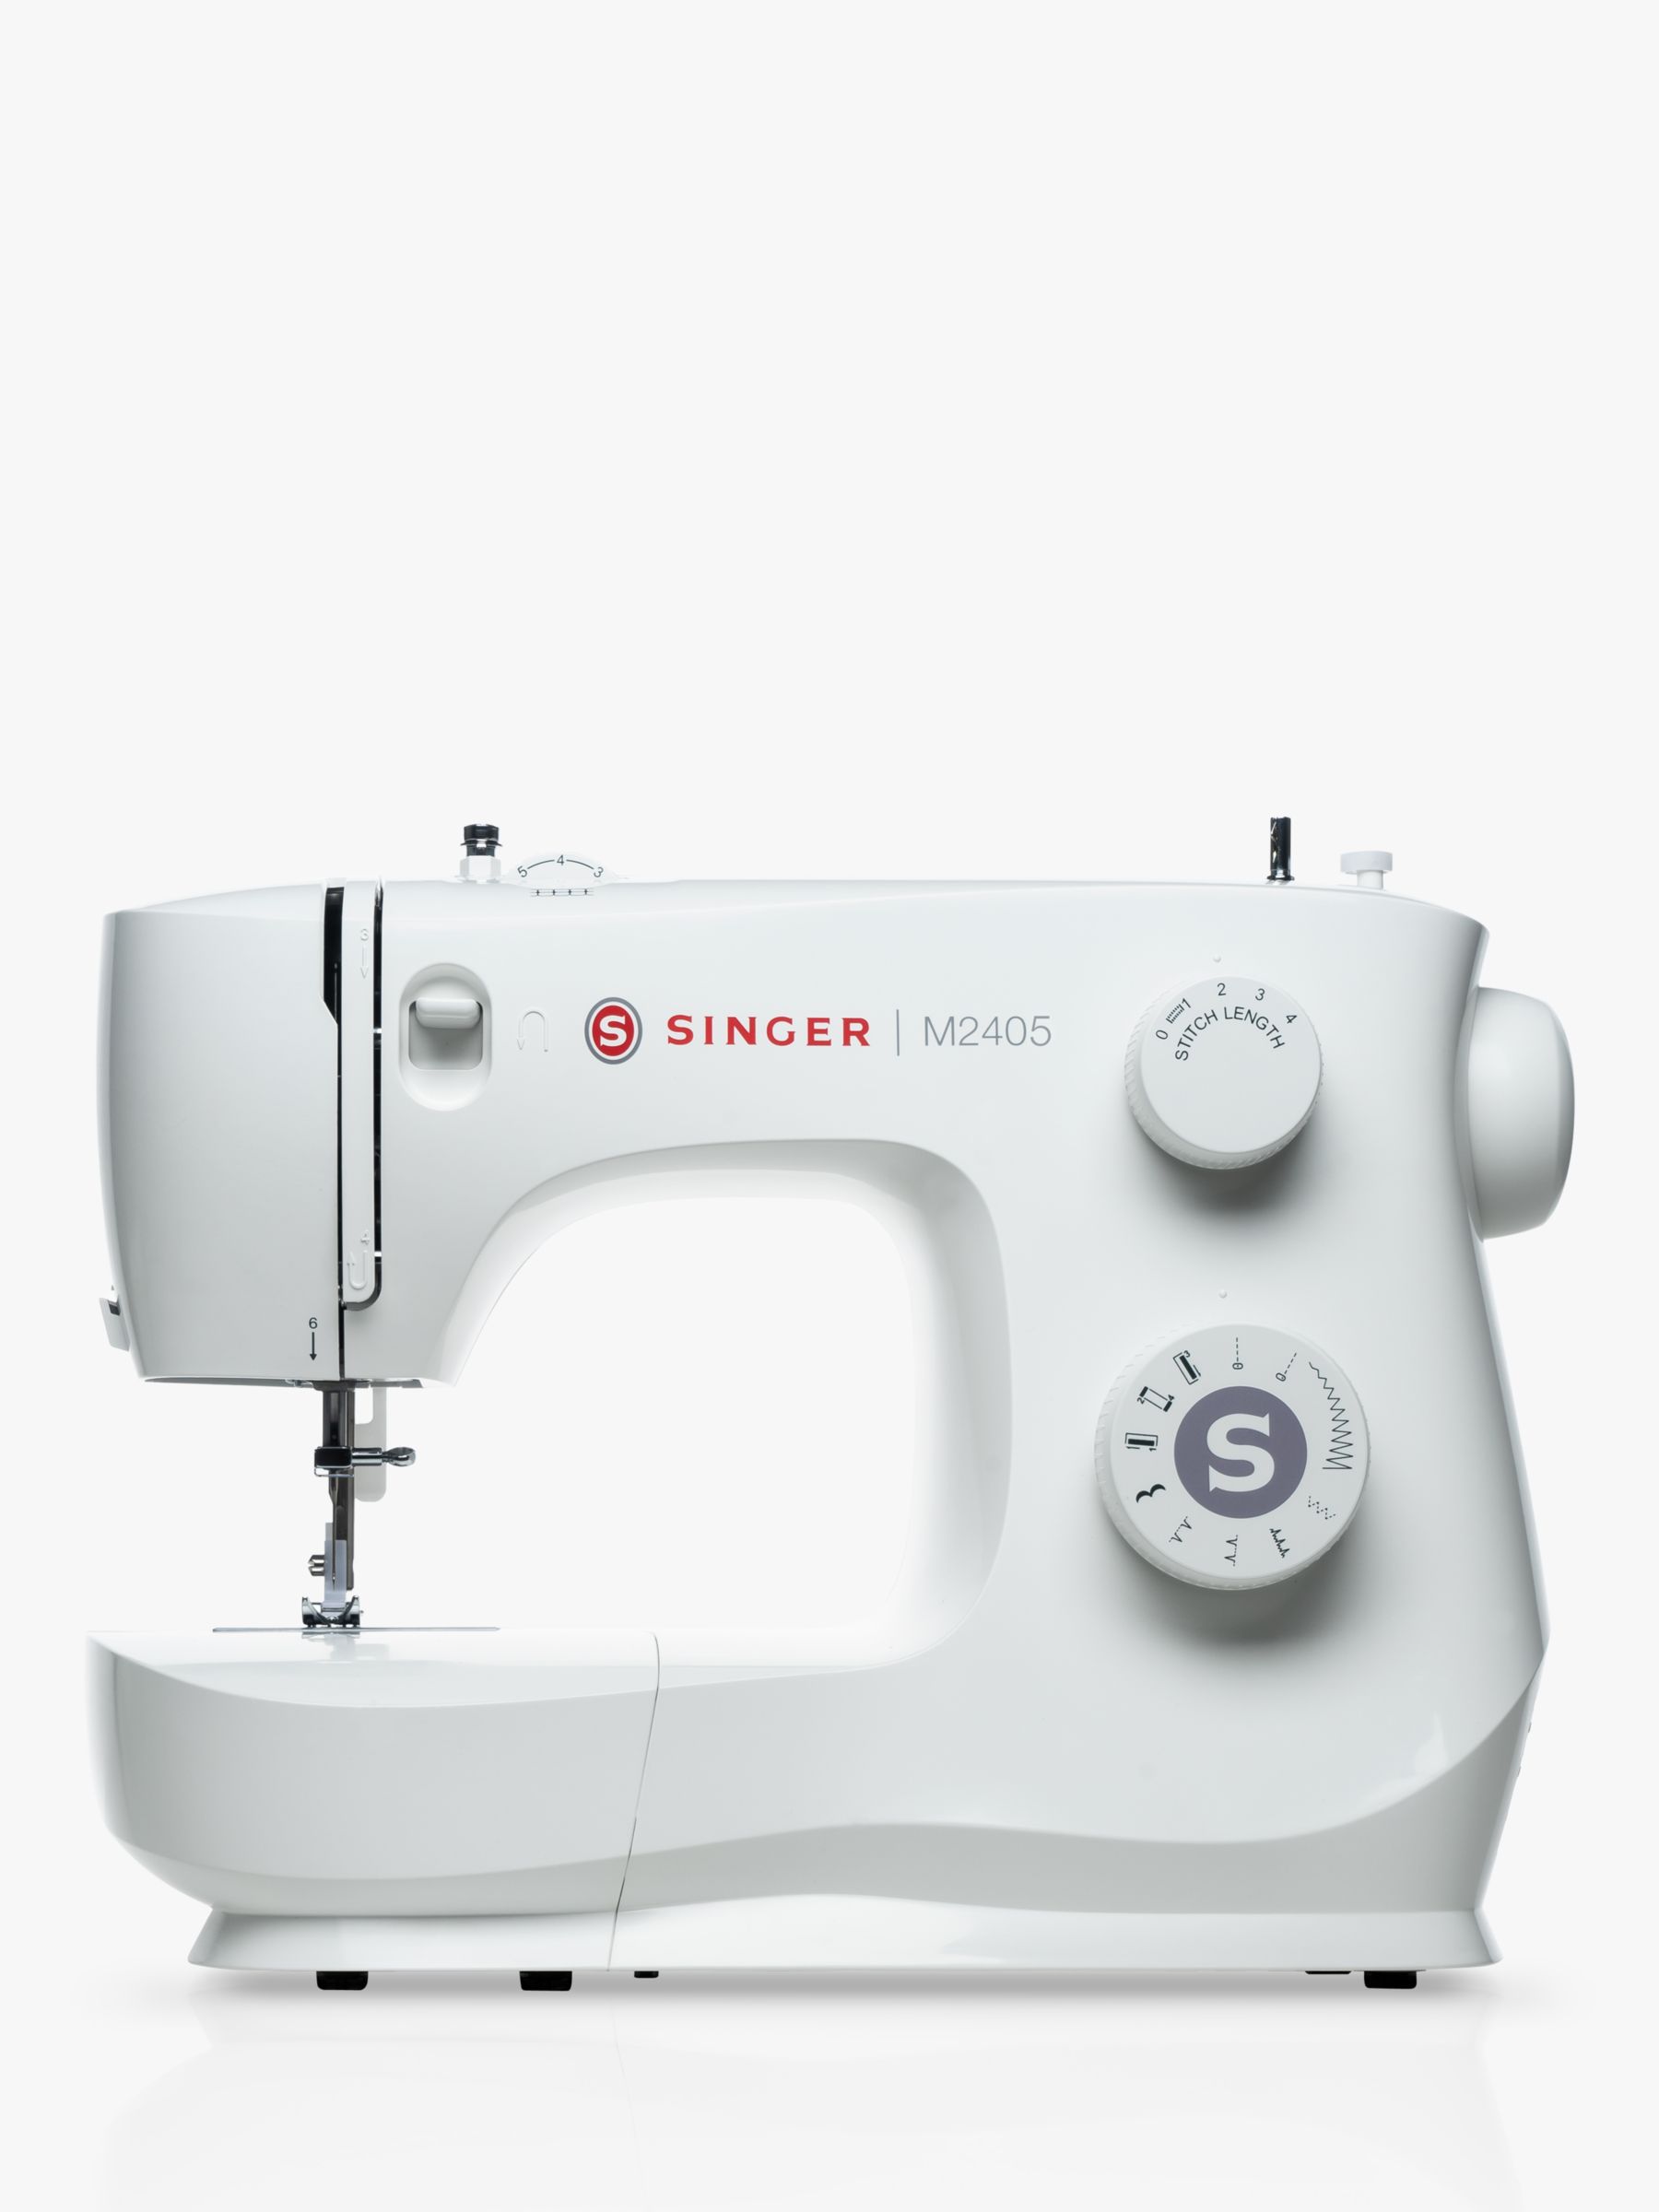 Singer M2605 Sewing Machine + FREE Gift Bundle